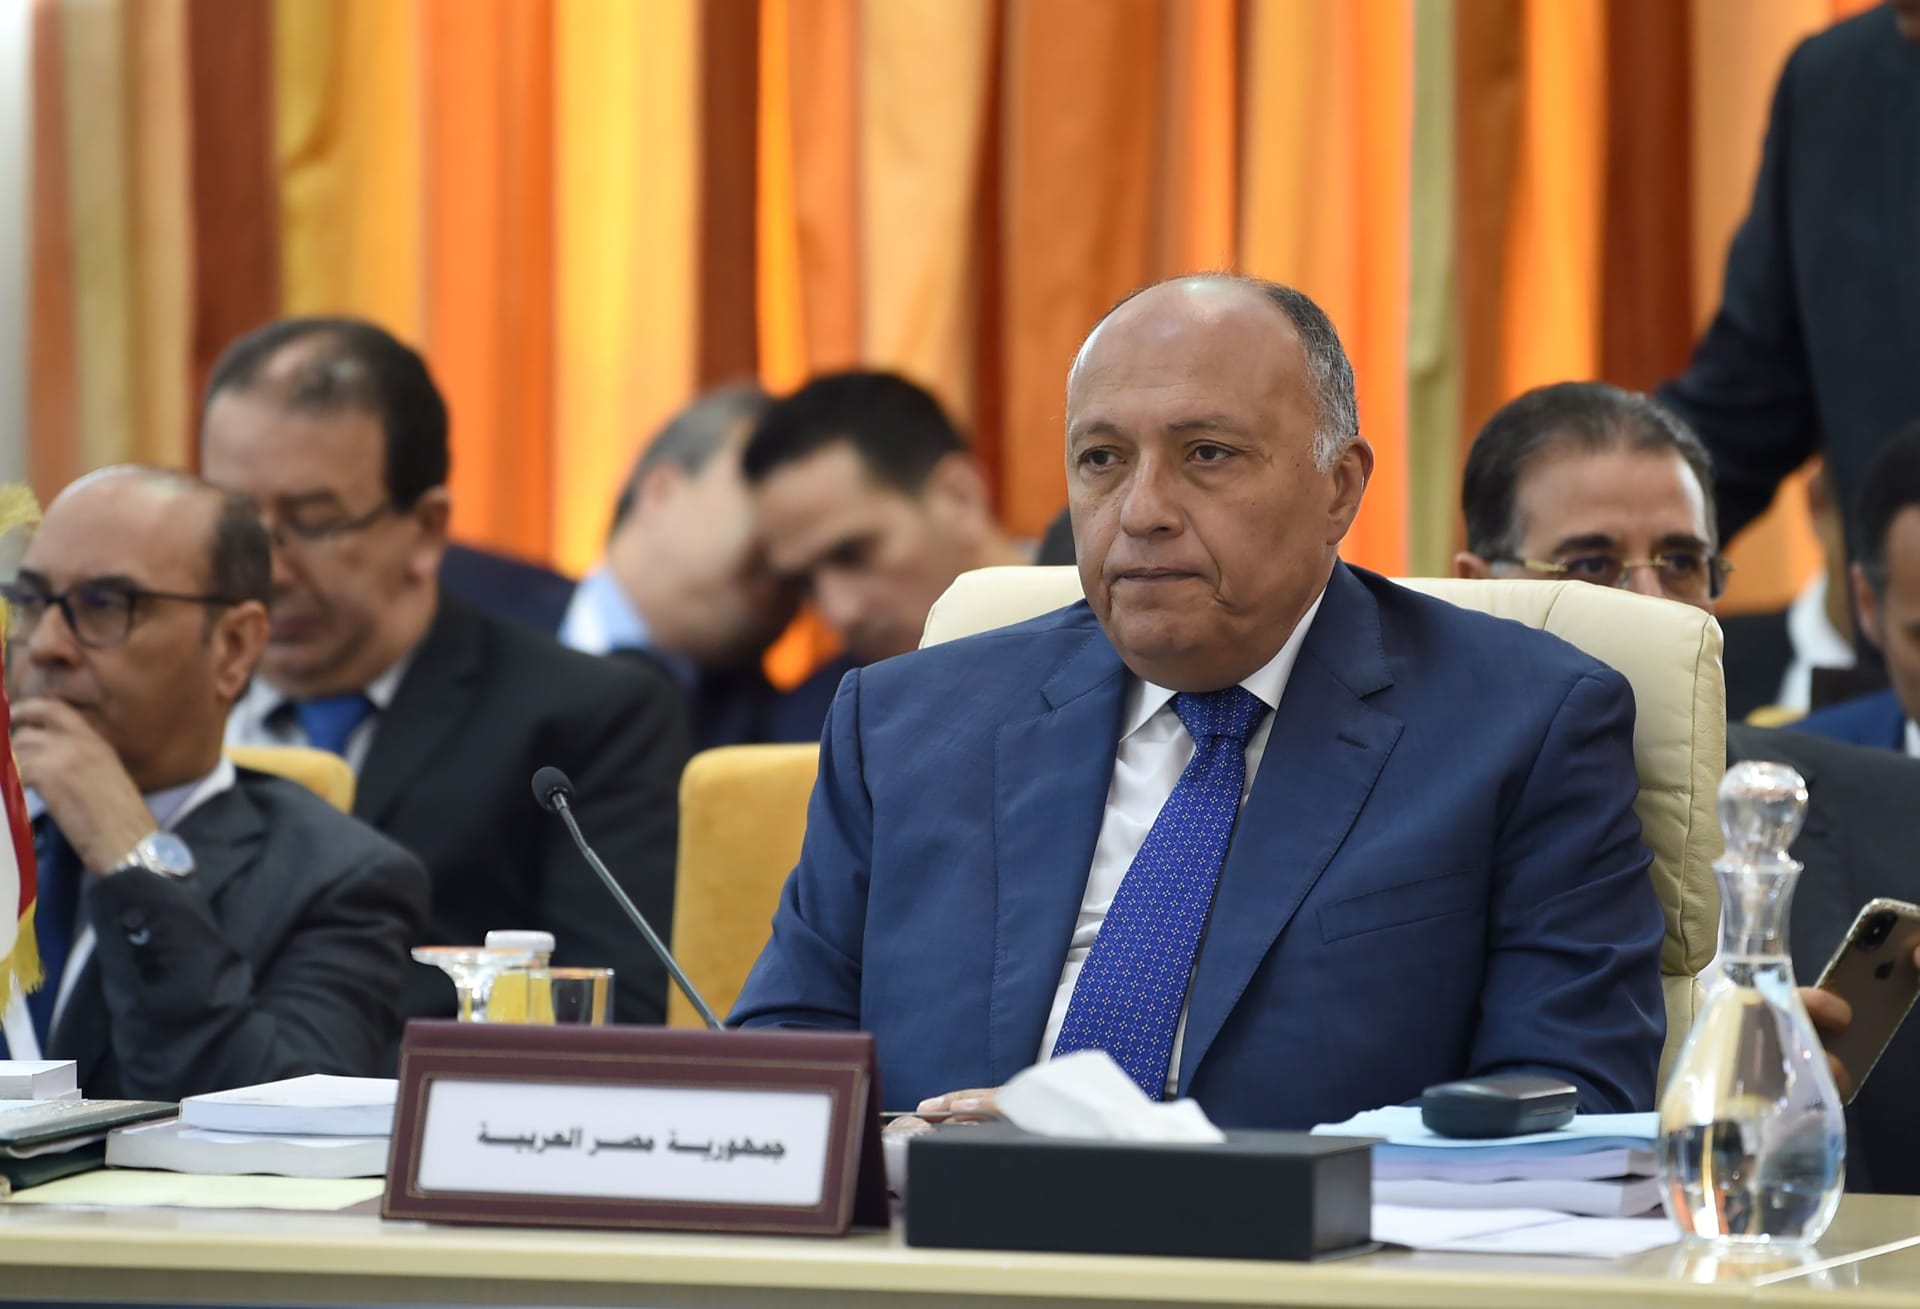 مصر تدعو كافة الأطراف في السودان لضبط النفس